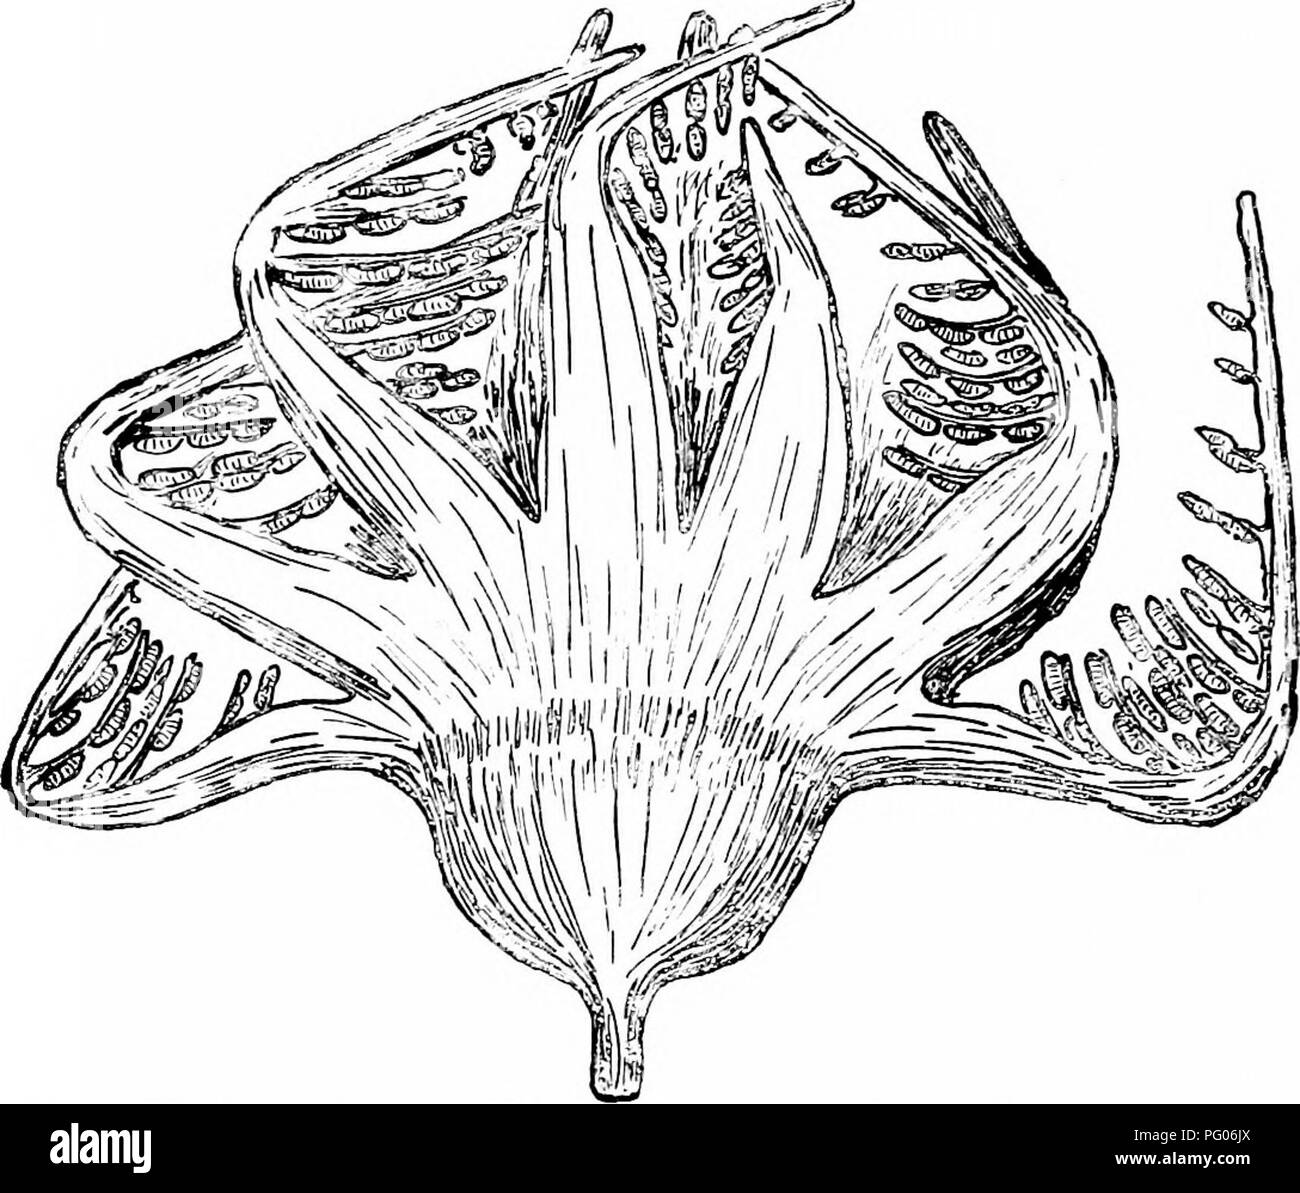 . Plantas fósiles : para los estudiantes de botánica y geología . Paleobotánica. 438 BENNBTTITALES [CH. (Fig. 552). Los microspores, 58-65/i en longitud, son bastante estrechas, ovaladas y muy similares a los descritos por Solms-Laubach^ en Cycadeoidea etrusca. La synangia están conectados en dos filas de delgados segmentos laterales que parecen estar desprendido de la cara superior cerca de la línea media del amplio sporophylls lineal (fig. 565, A). Nathorst señala que la posición de las pinnas fértil trae el sporophylls en estrecha relación con la vegeta- tiva frondes de Ptikyphyllum pecten y otros Cycadean f Foto de stock